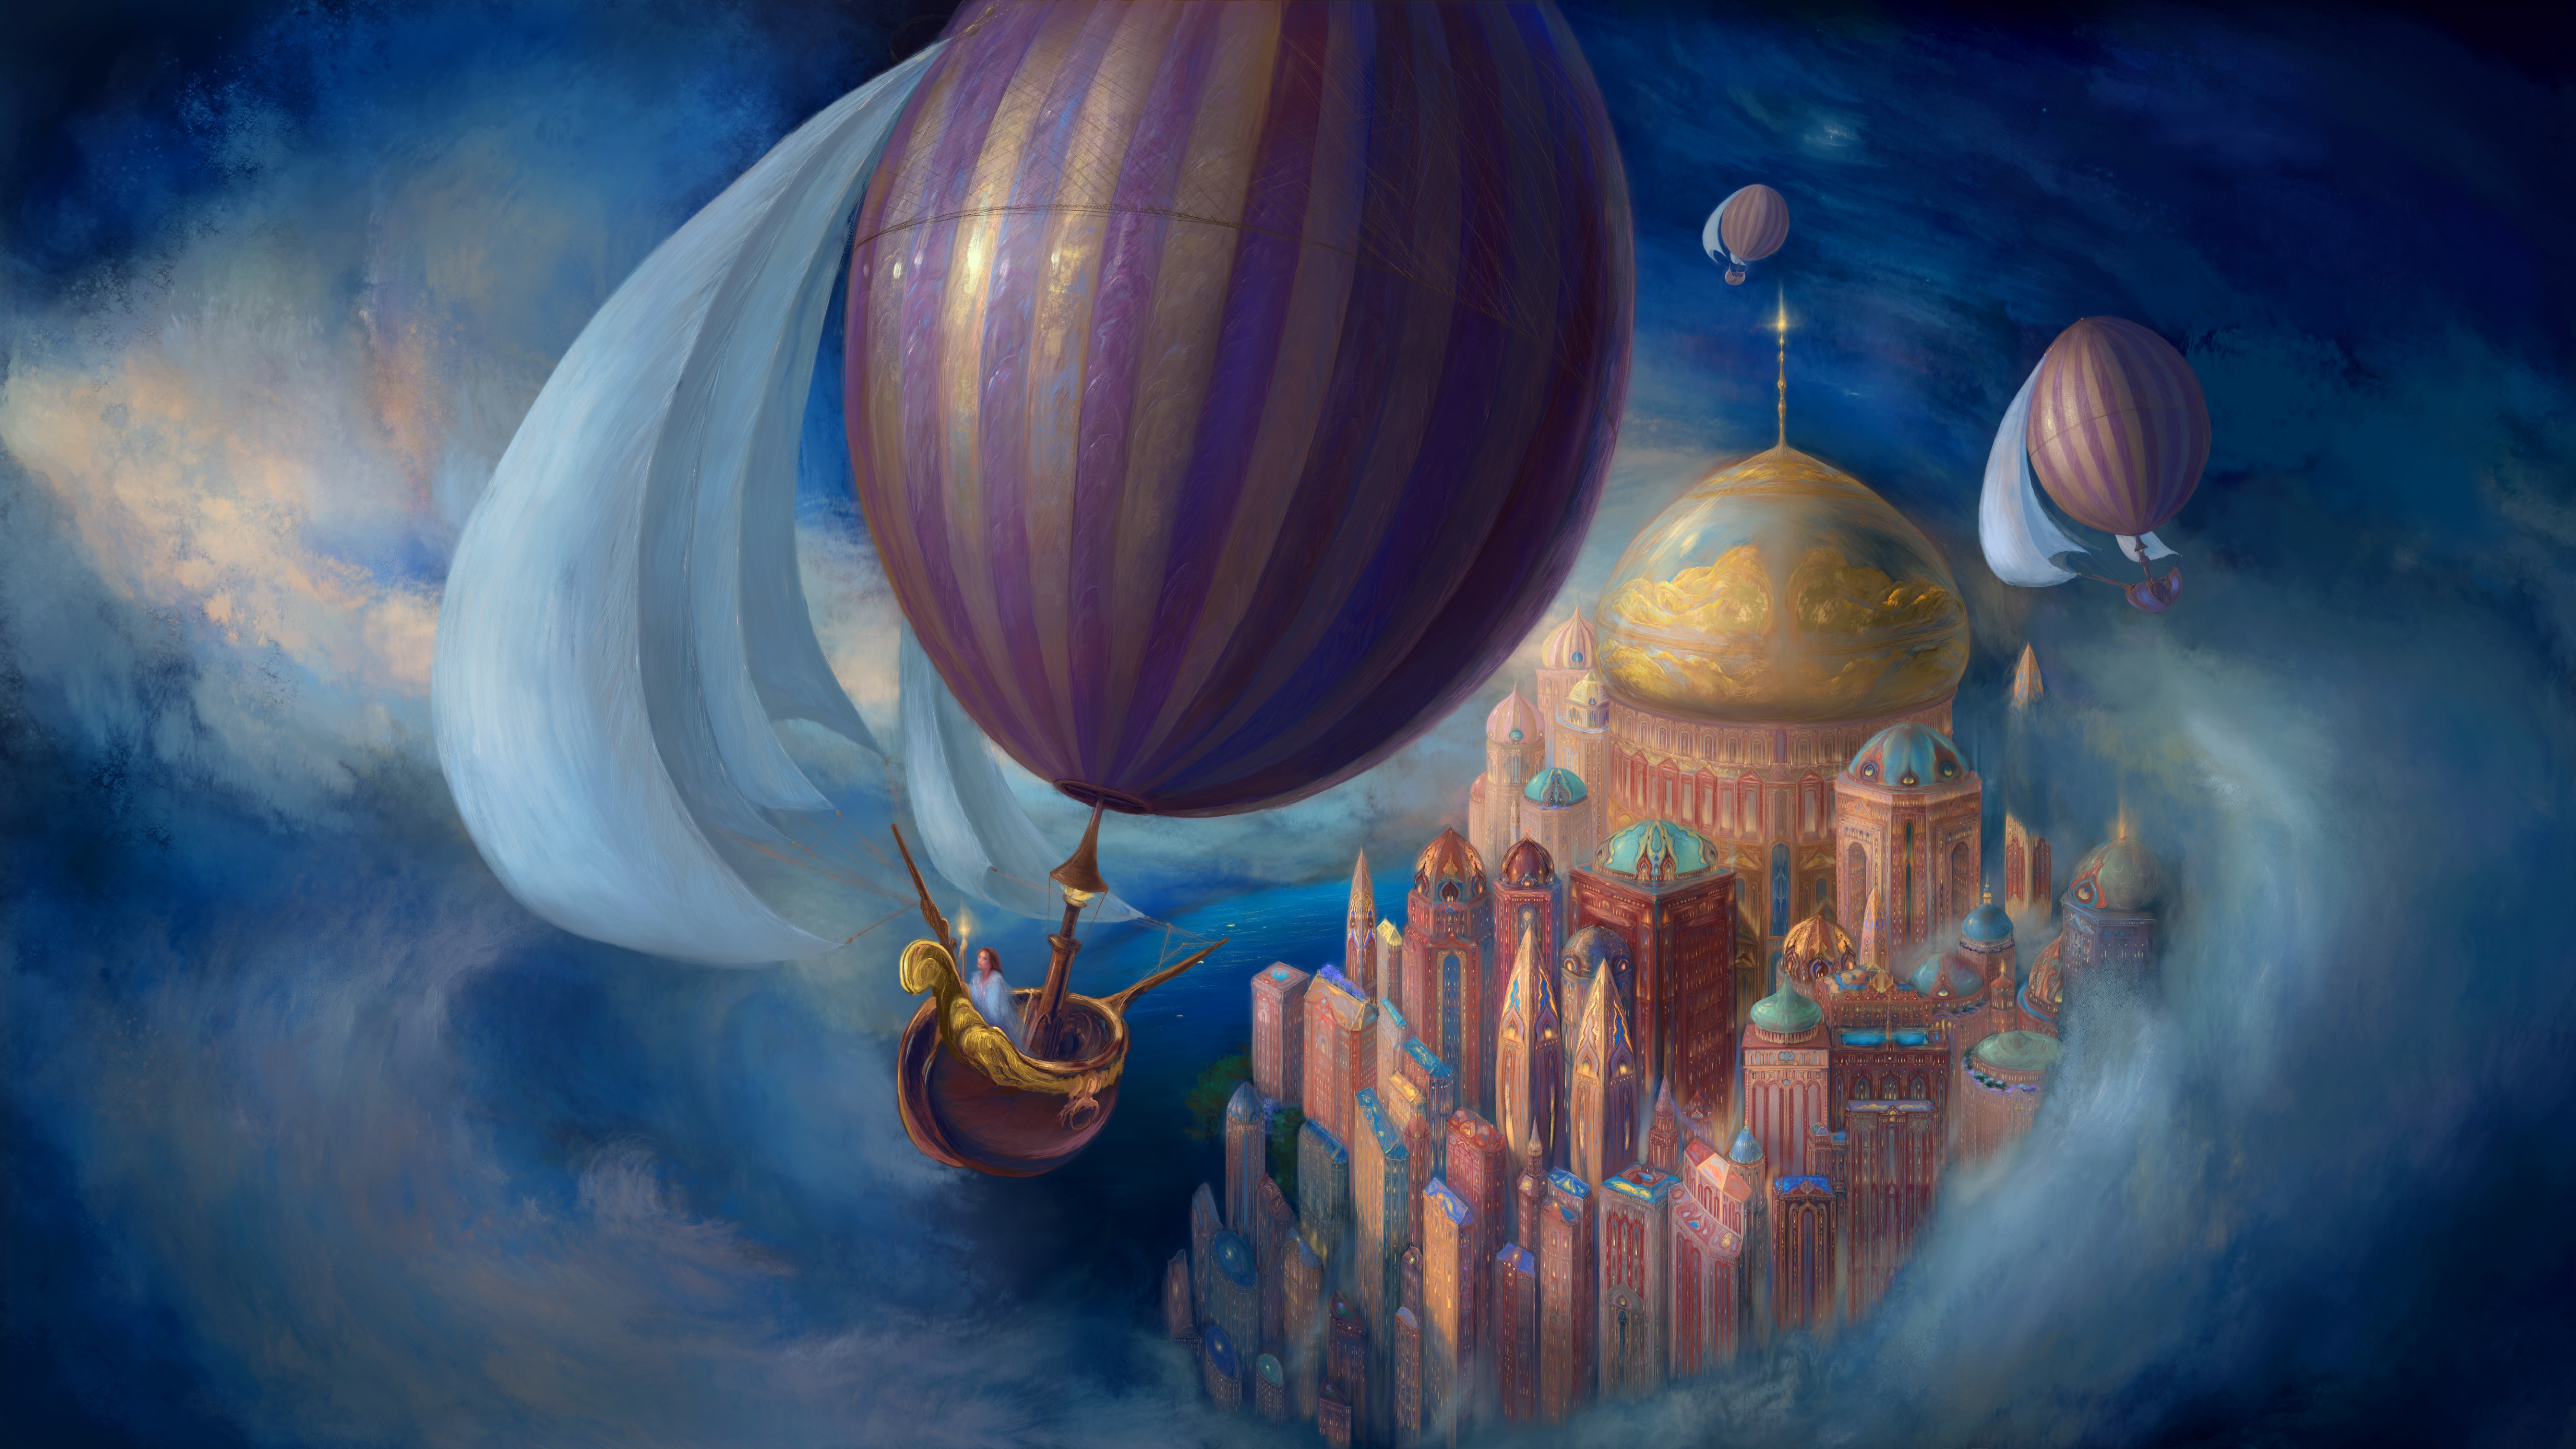 Hot Air Balloon over Fantasy World by Ekaterinya Vladinakova